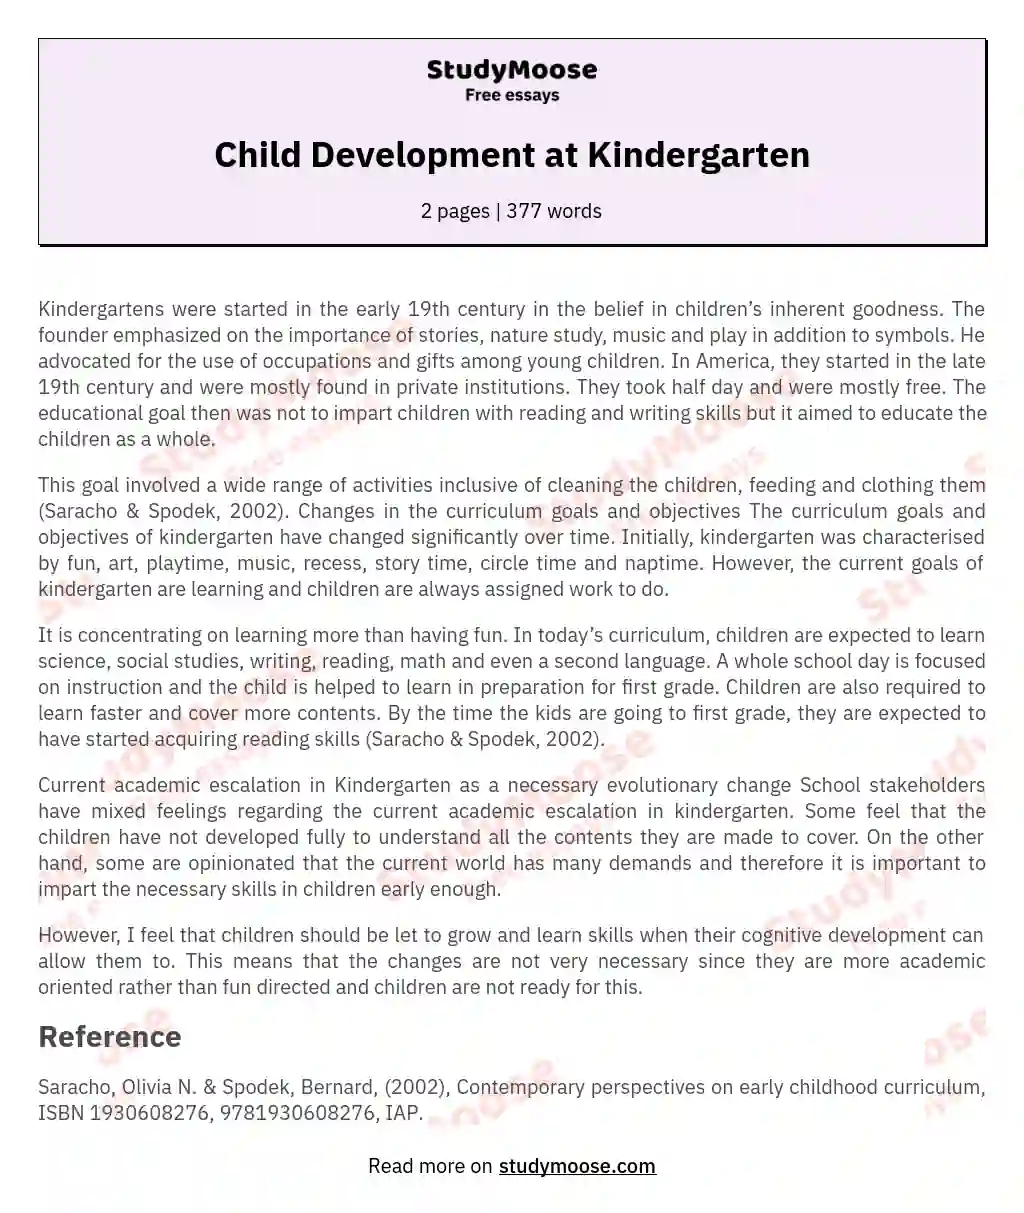 Child Development at Kindergarten